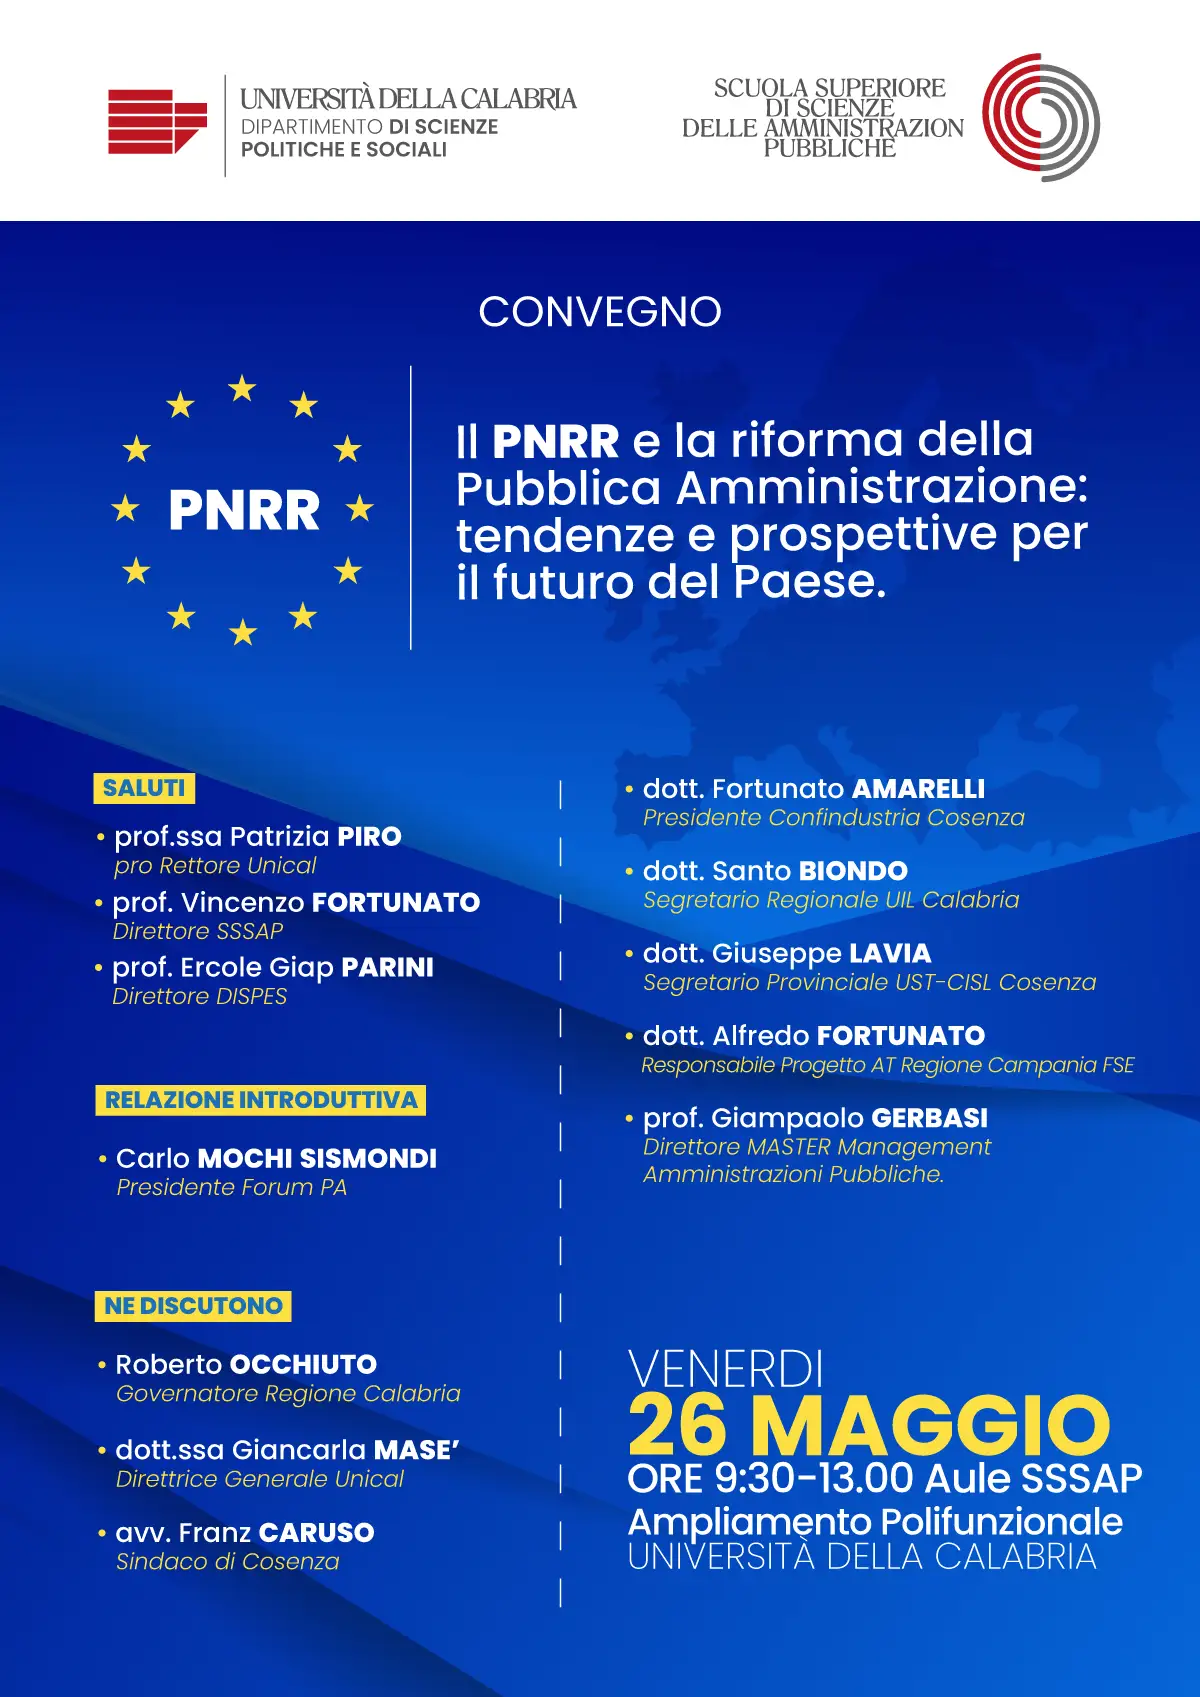 PNRR e riforma della pubblica amministrazione. Tendenze e prospettive per il futuro del paese